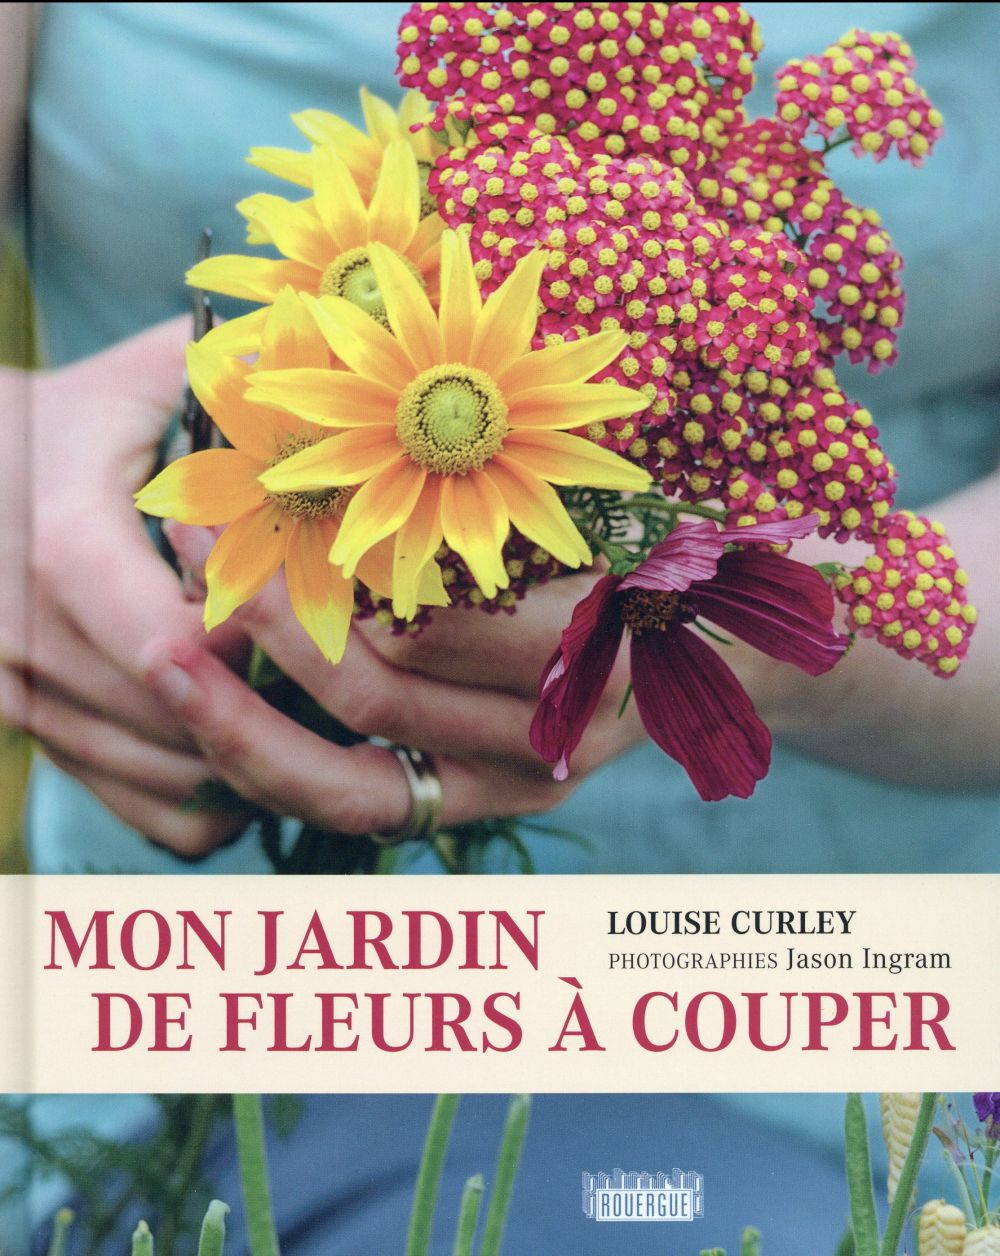 MON JARDIN DE FLEURS A COUPER